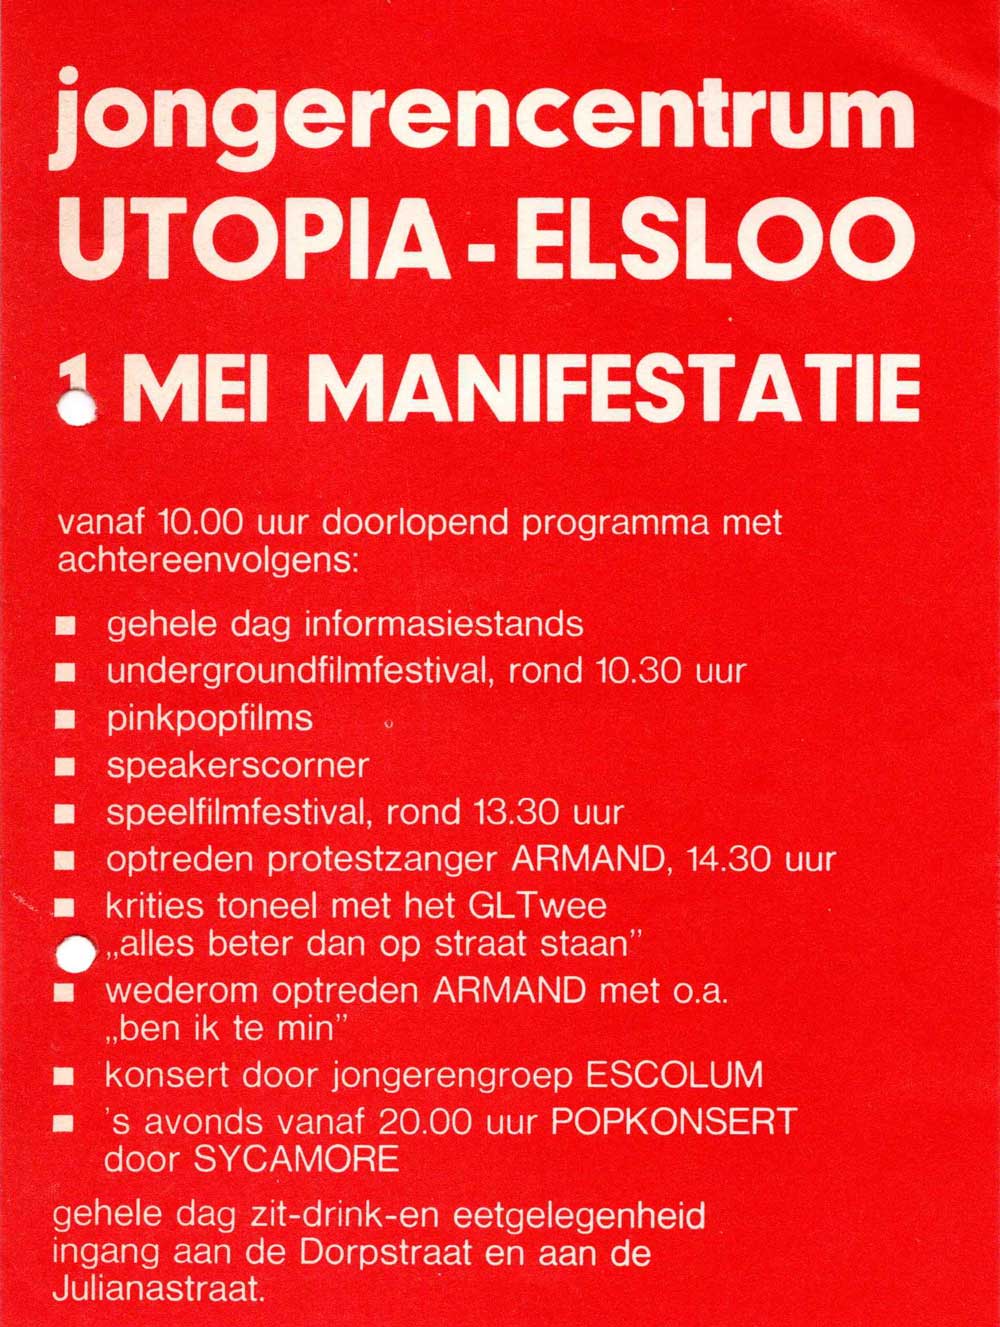 Utopia Elsloo 01.05.1976 flyer 1 mei viering